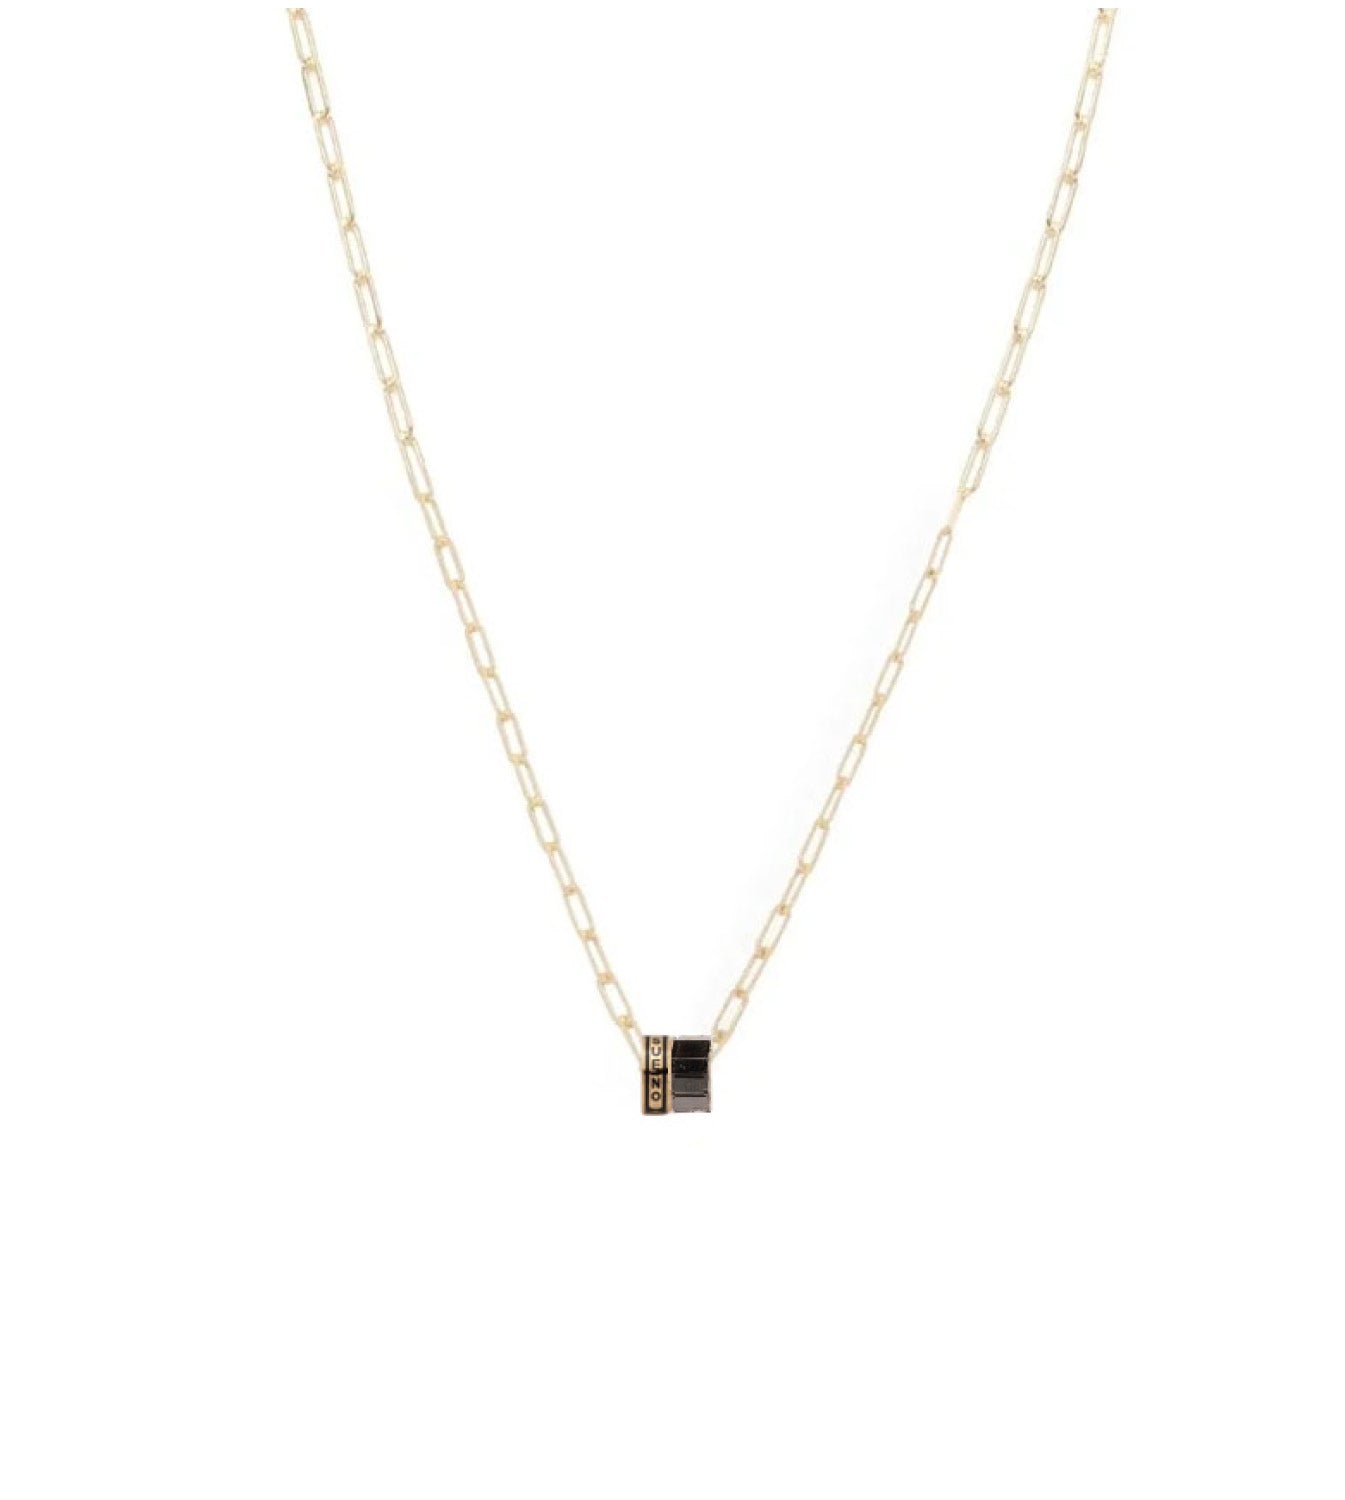 Gemstone Necklaces - Single & Multi Gemstone Necklaces – FoundRae